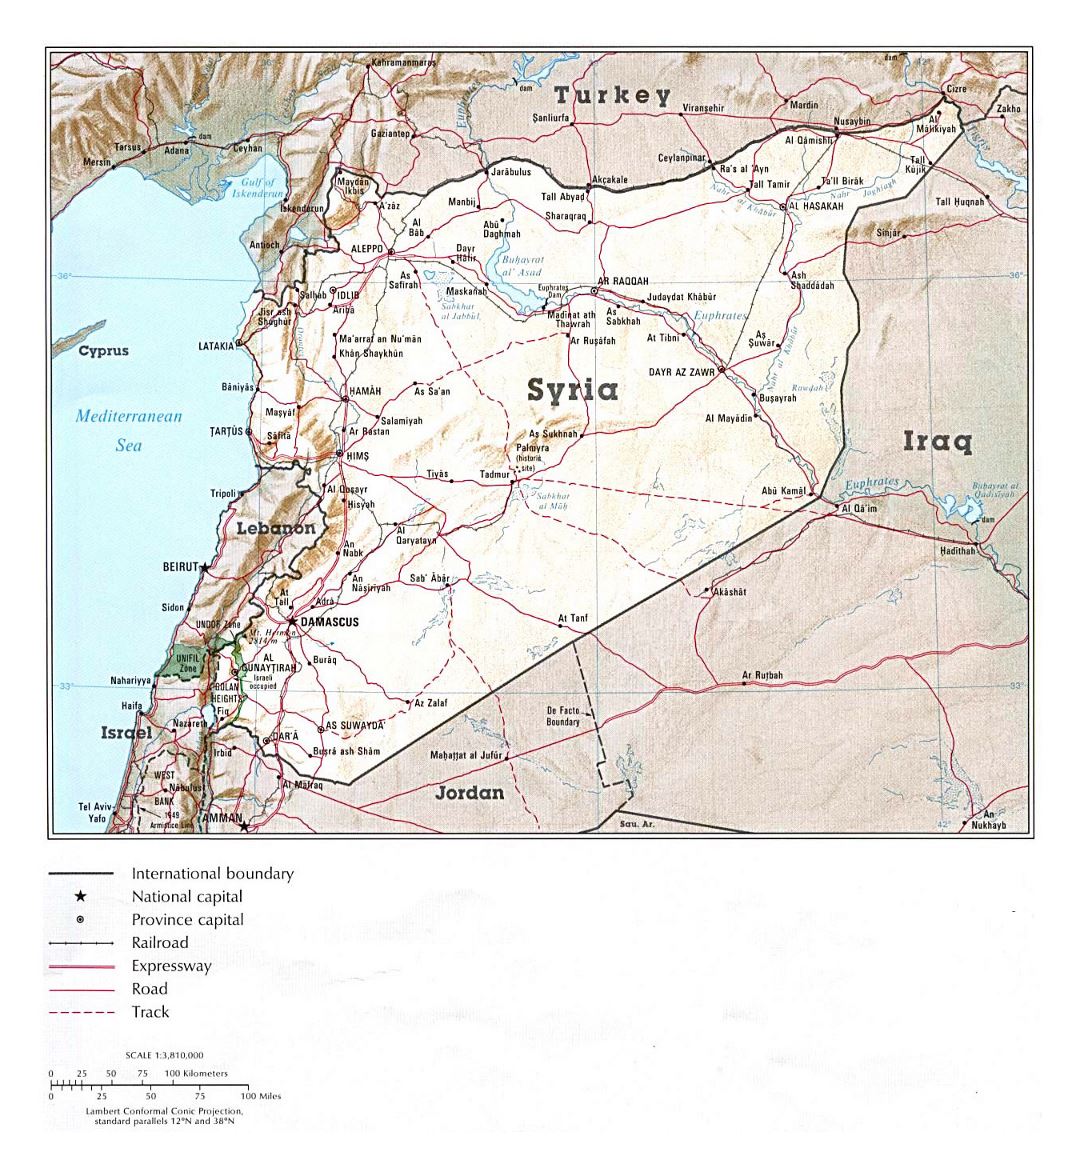 Детальная политическая карта Сирии с рельефом, дорогами, железными дорогами и крупными городами - 1993